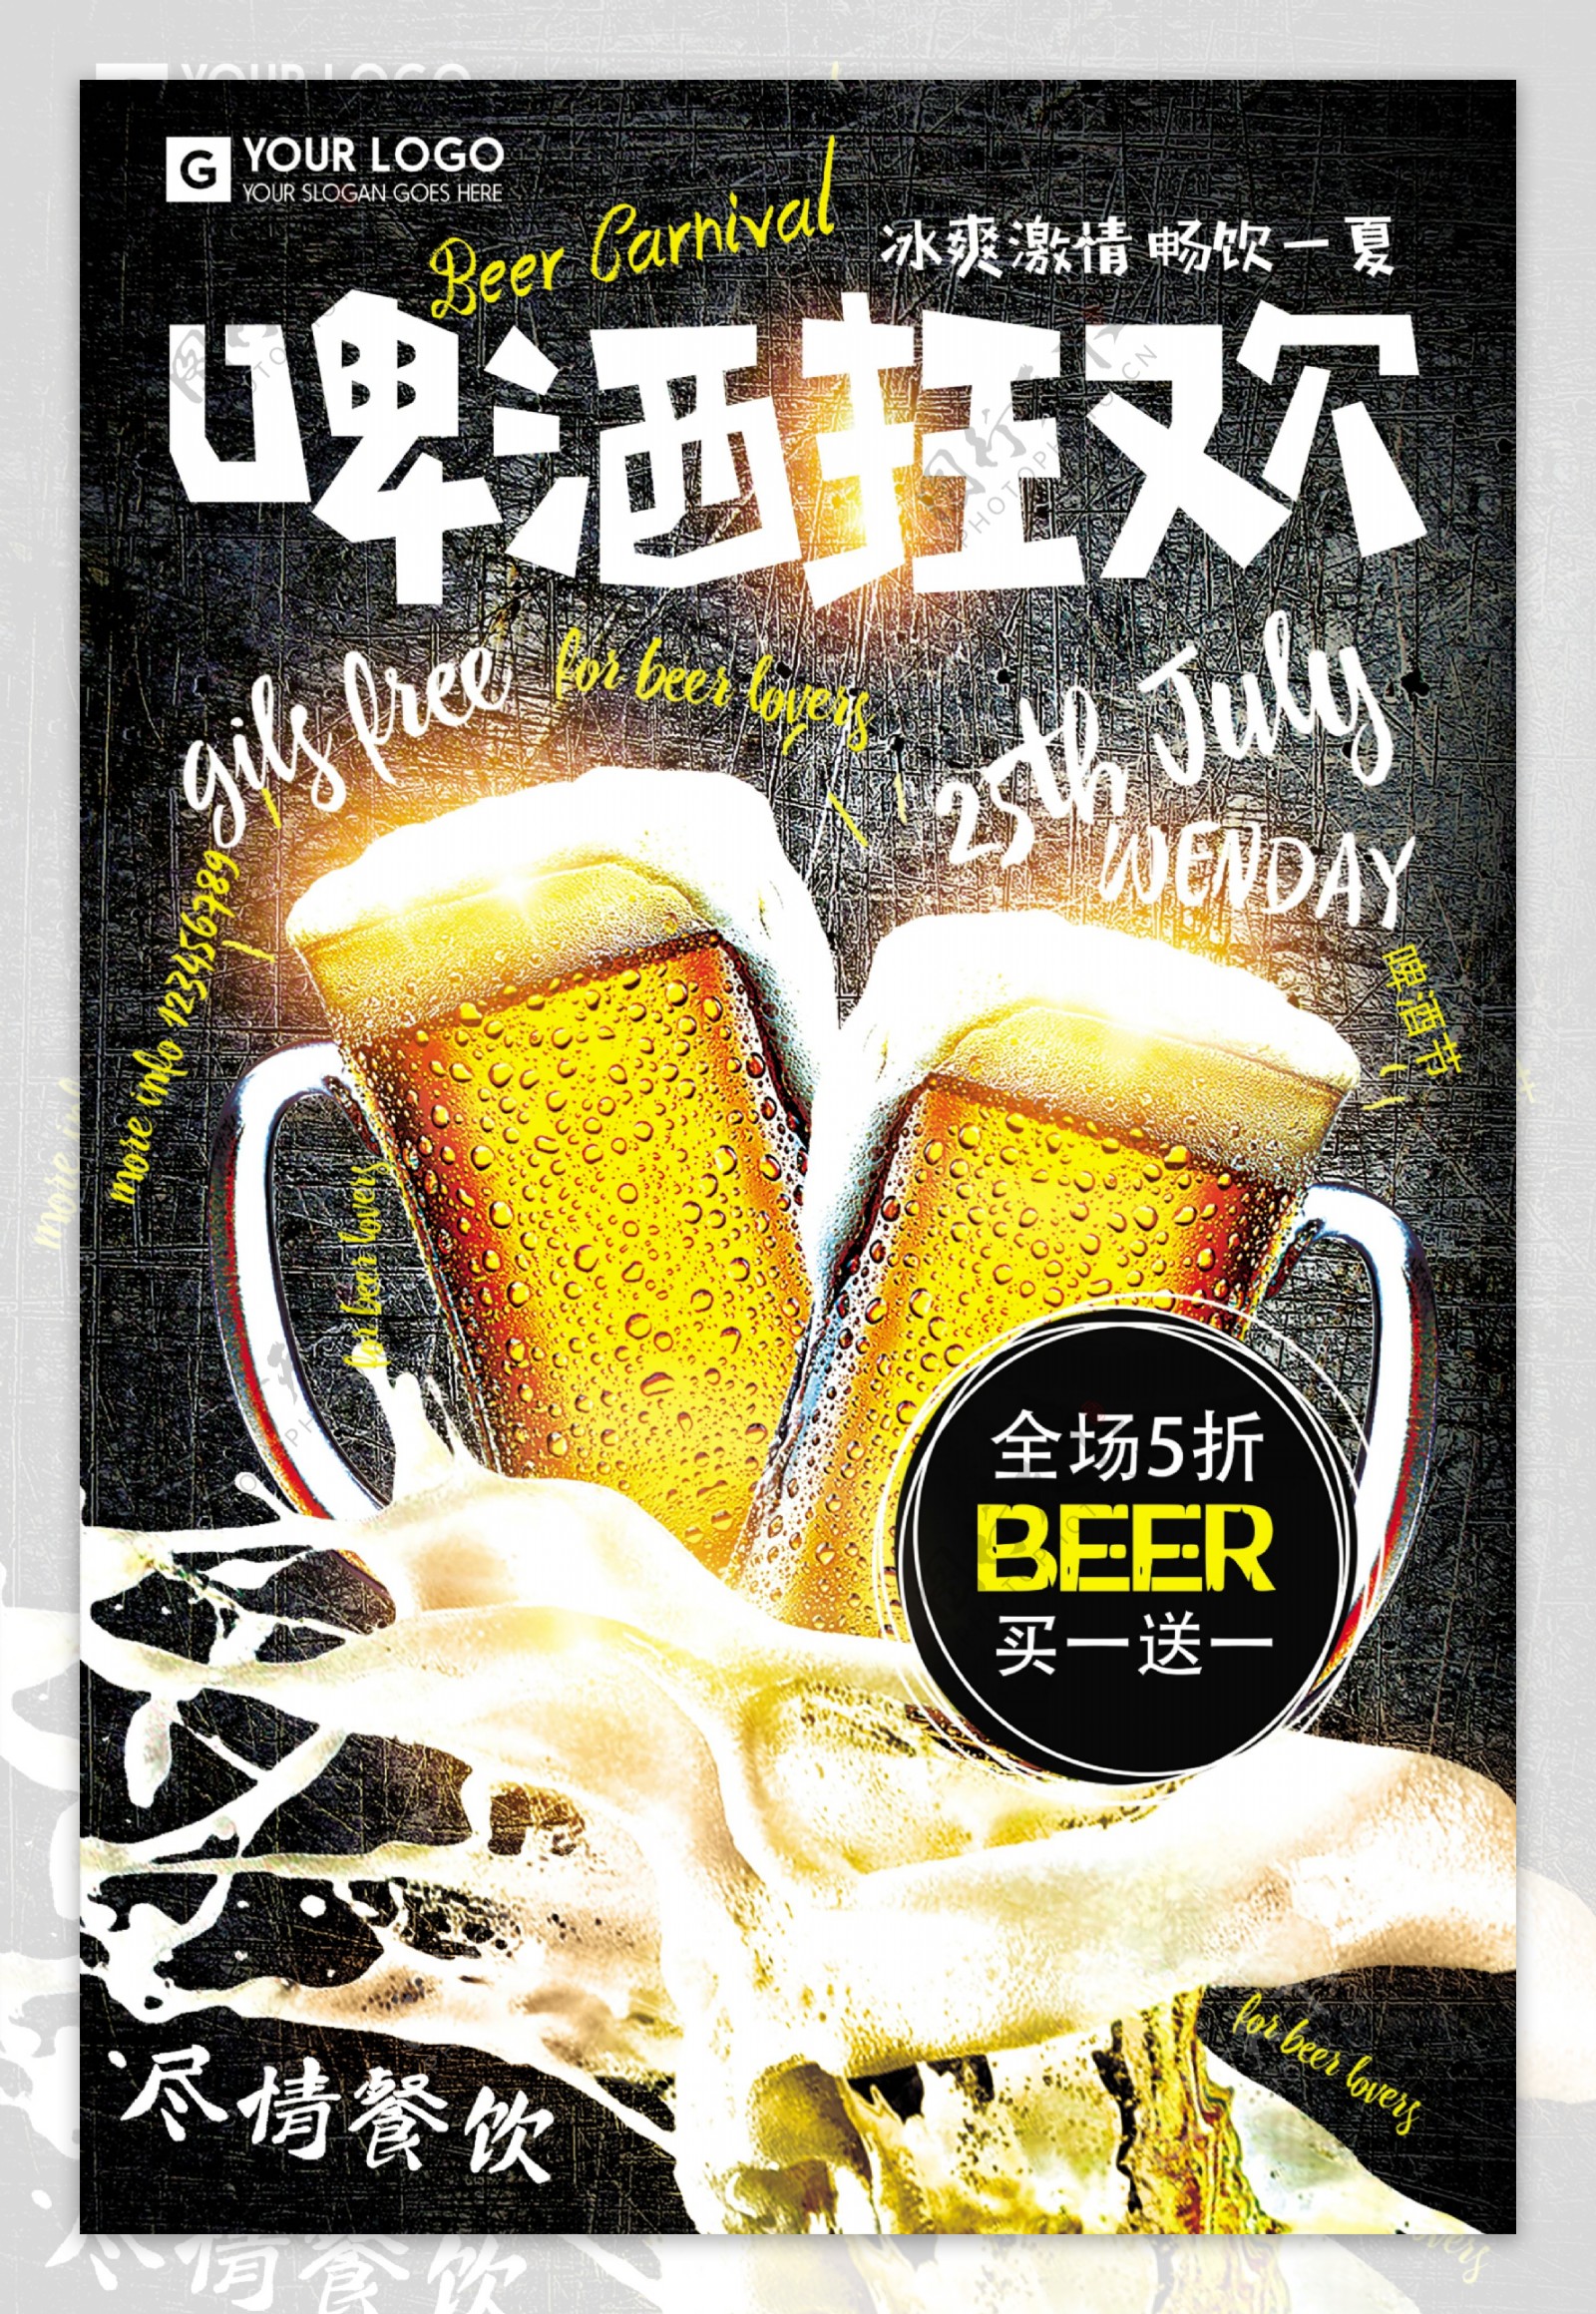 复古时尚啤酒狂欢节餐饮海报